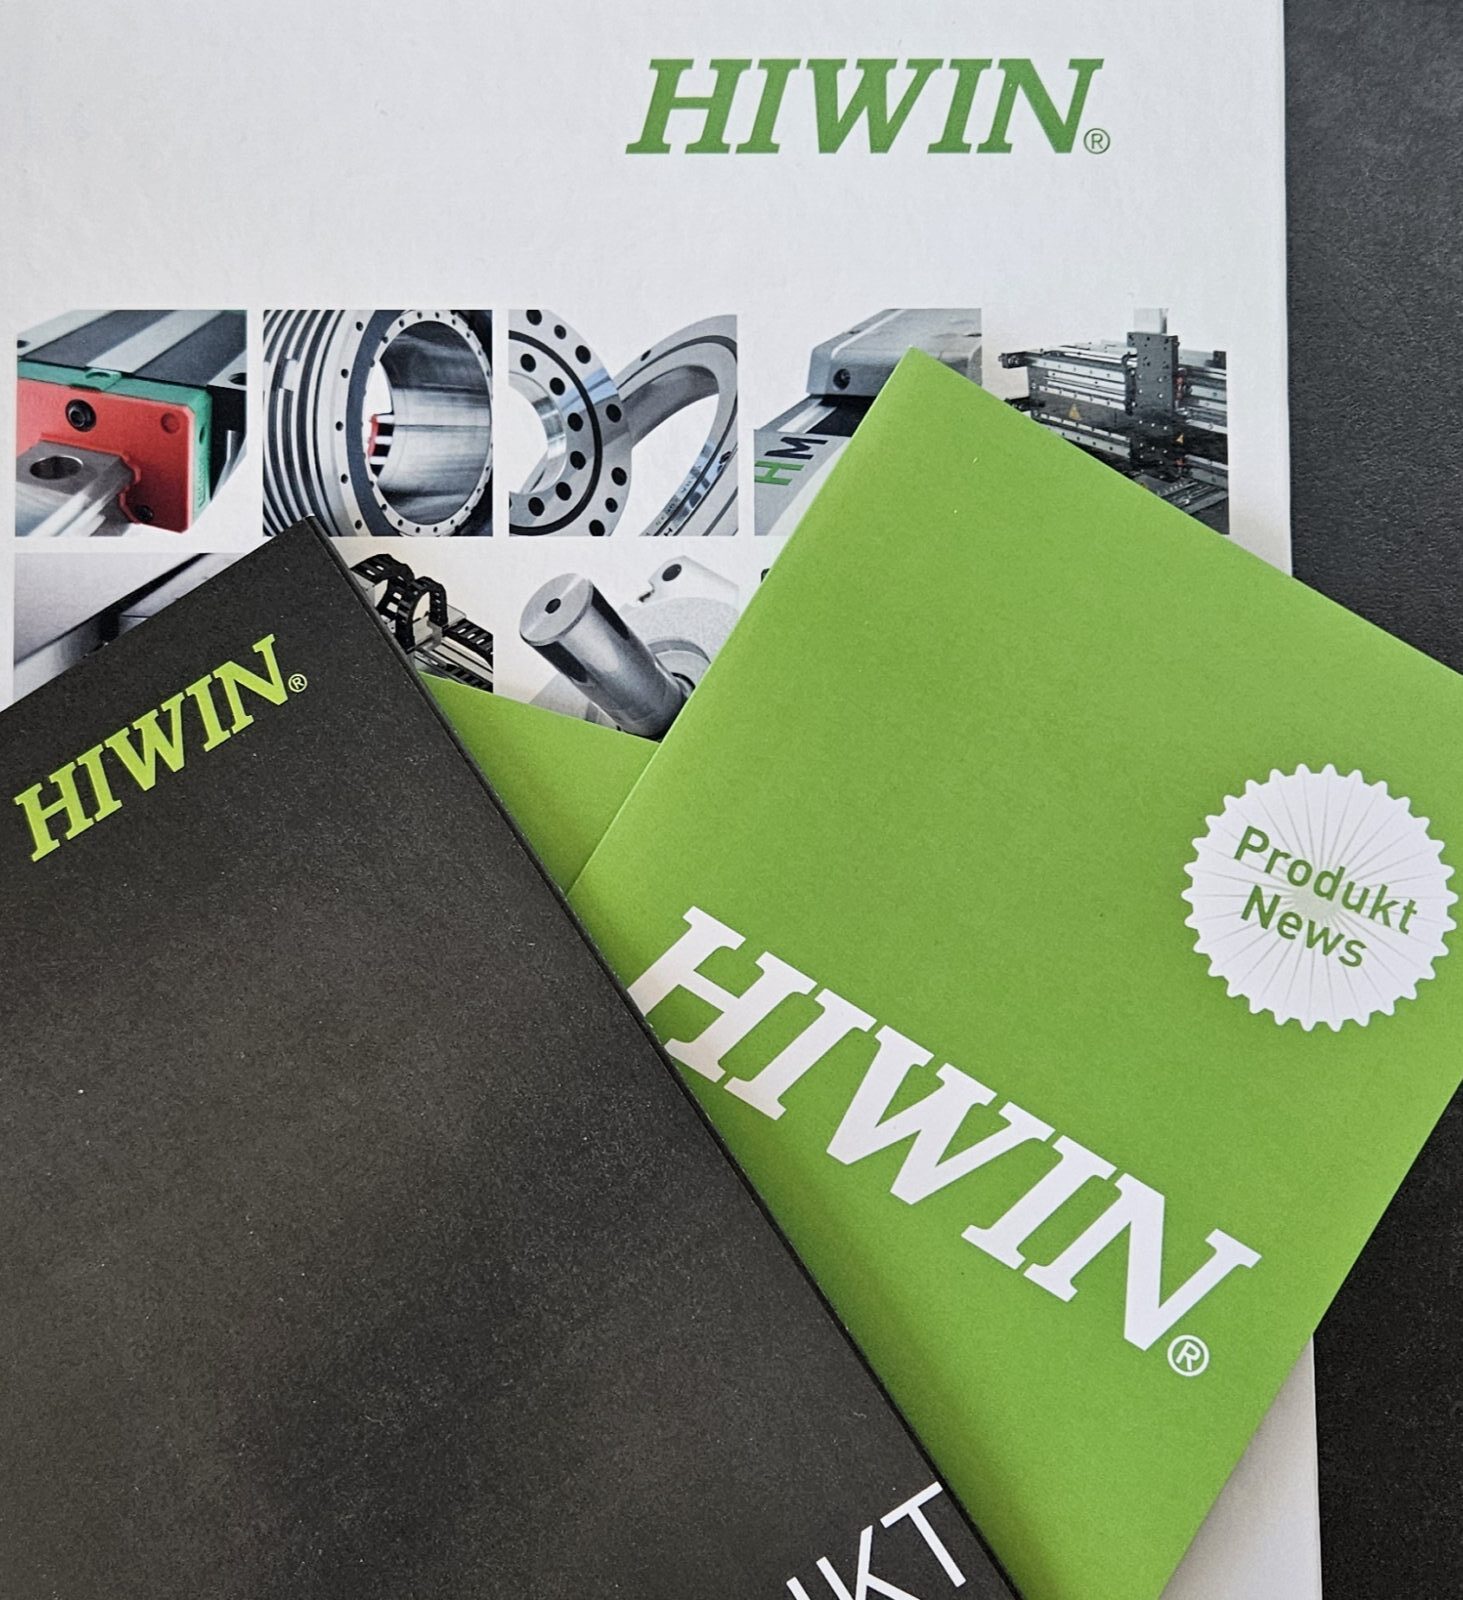 Die FRABEX wurde offizieller Händler für die Marke HIWIN in Österreich.